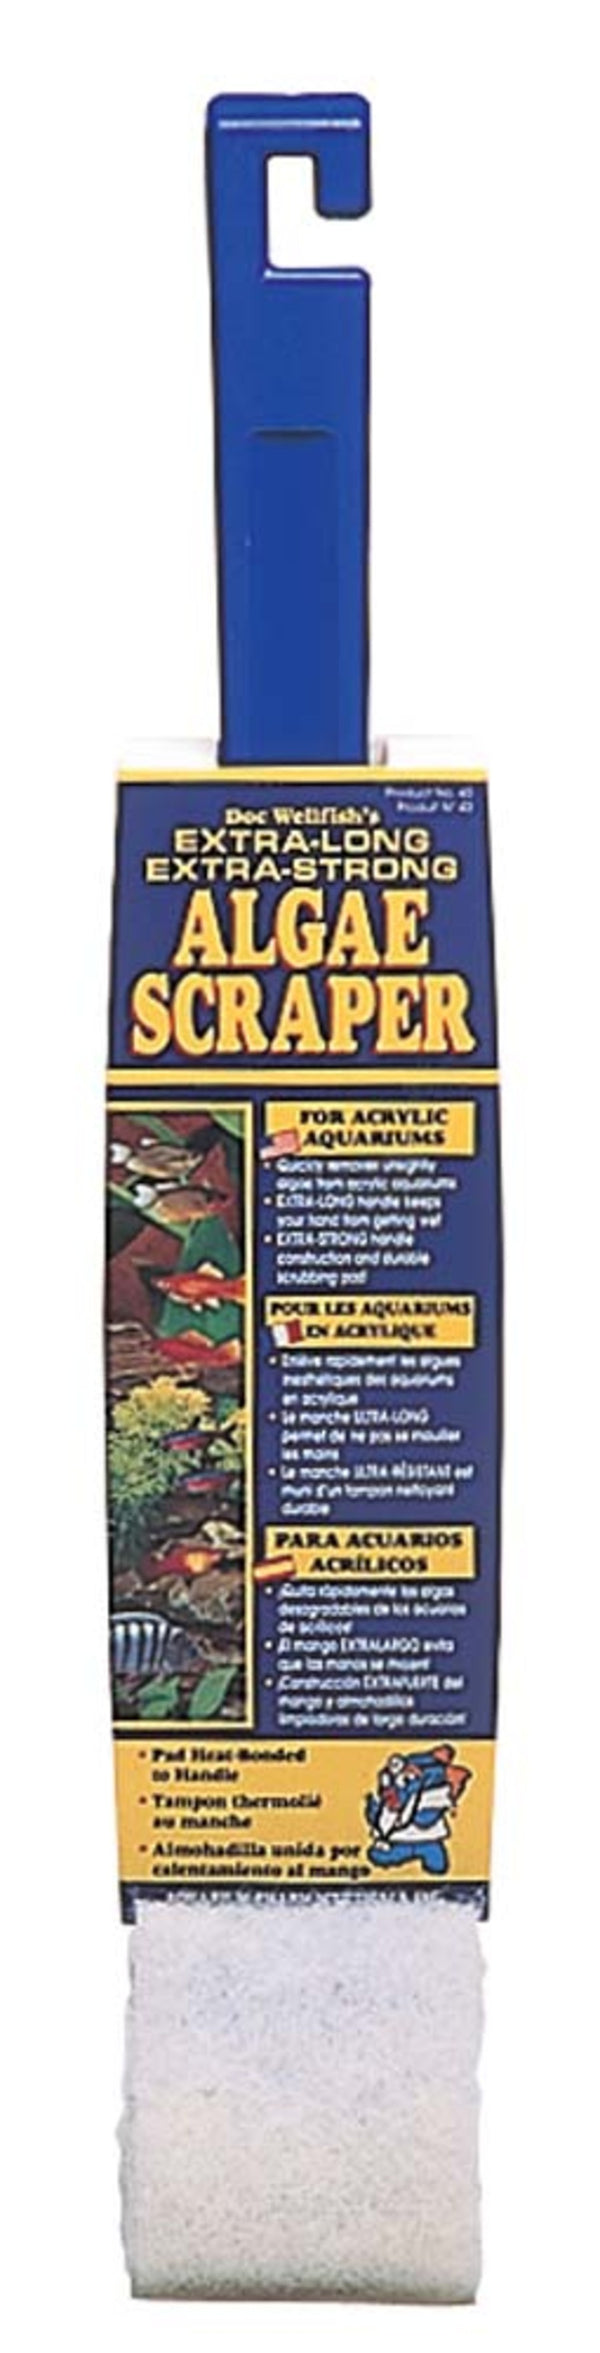 API Algae Scraper for Acrylic Aquariums